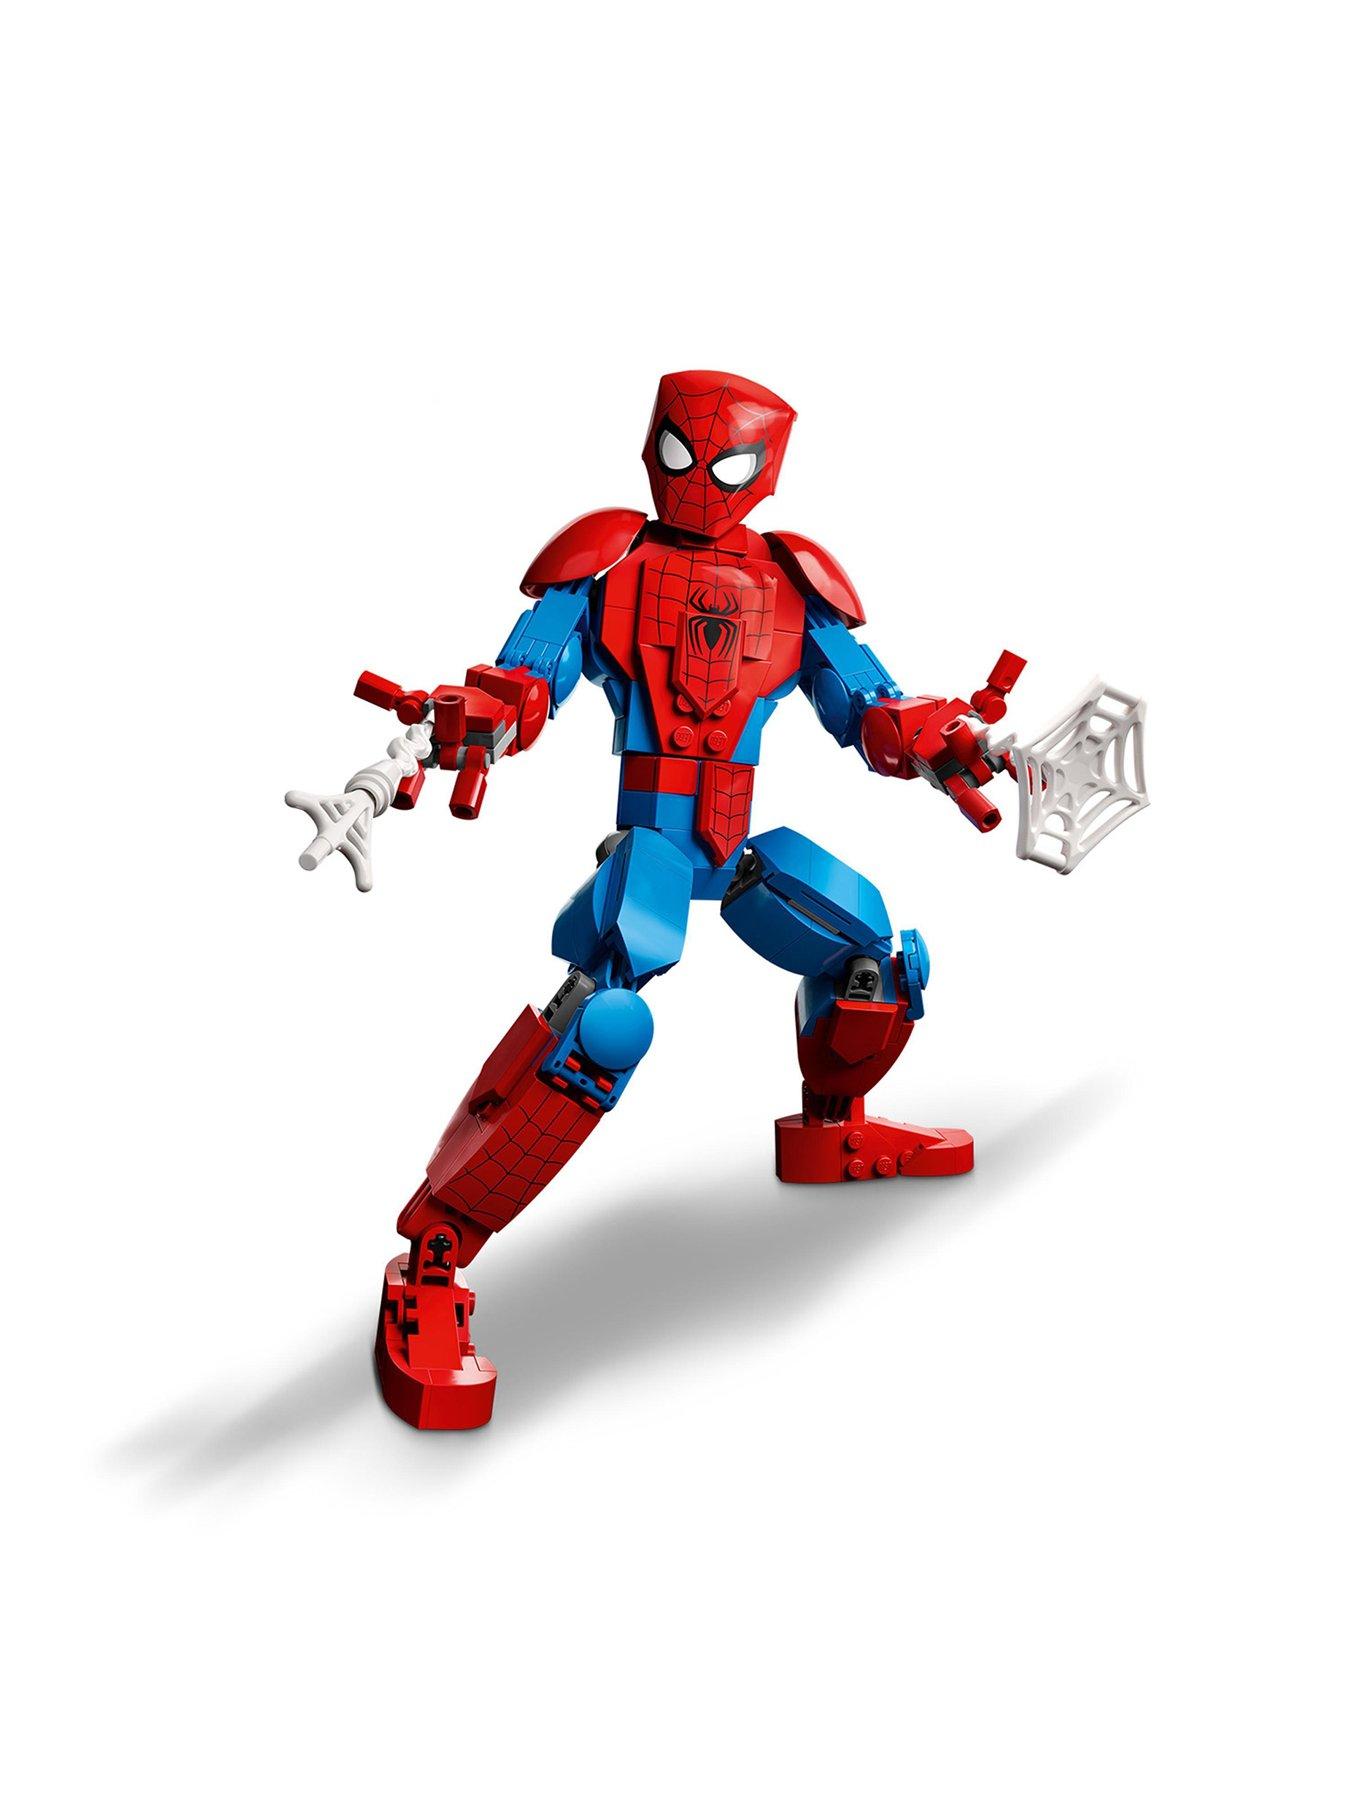 Spider-Man Team Diamond Painting Kits 20% Off Today – DIY Diamond